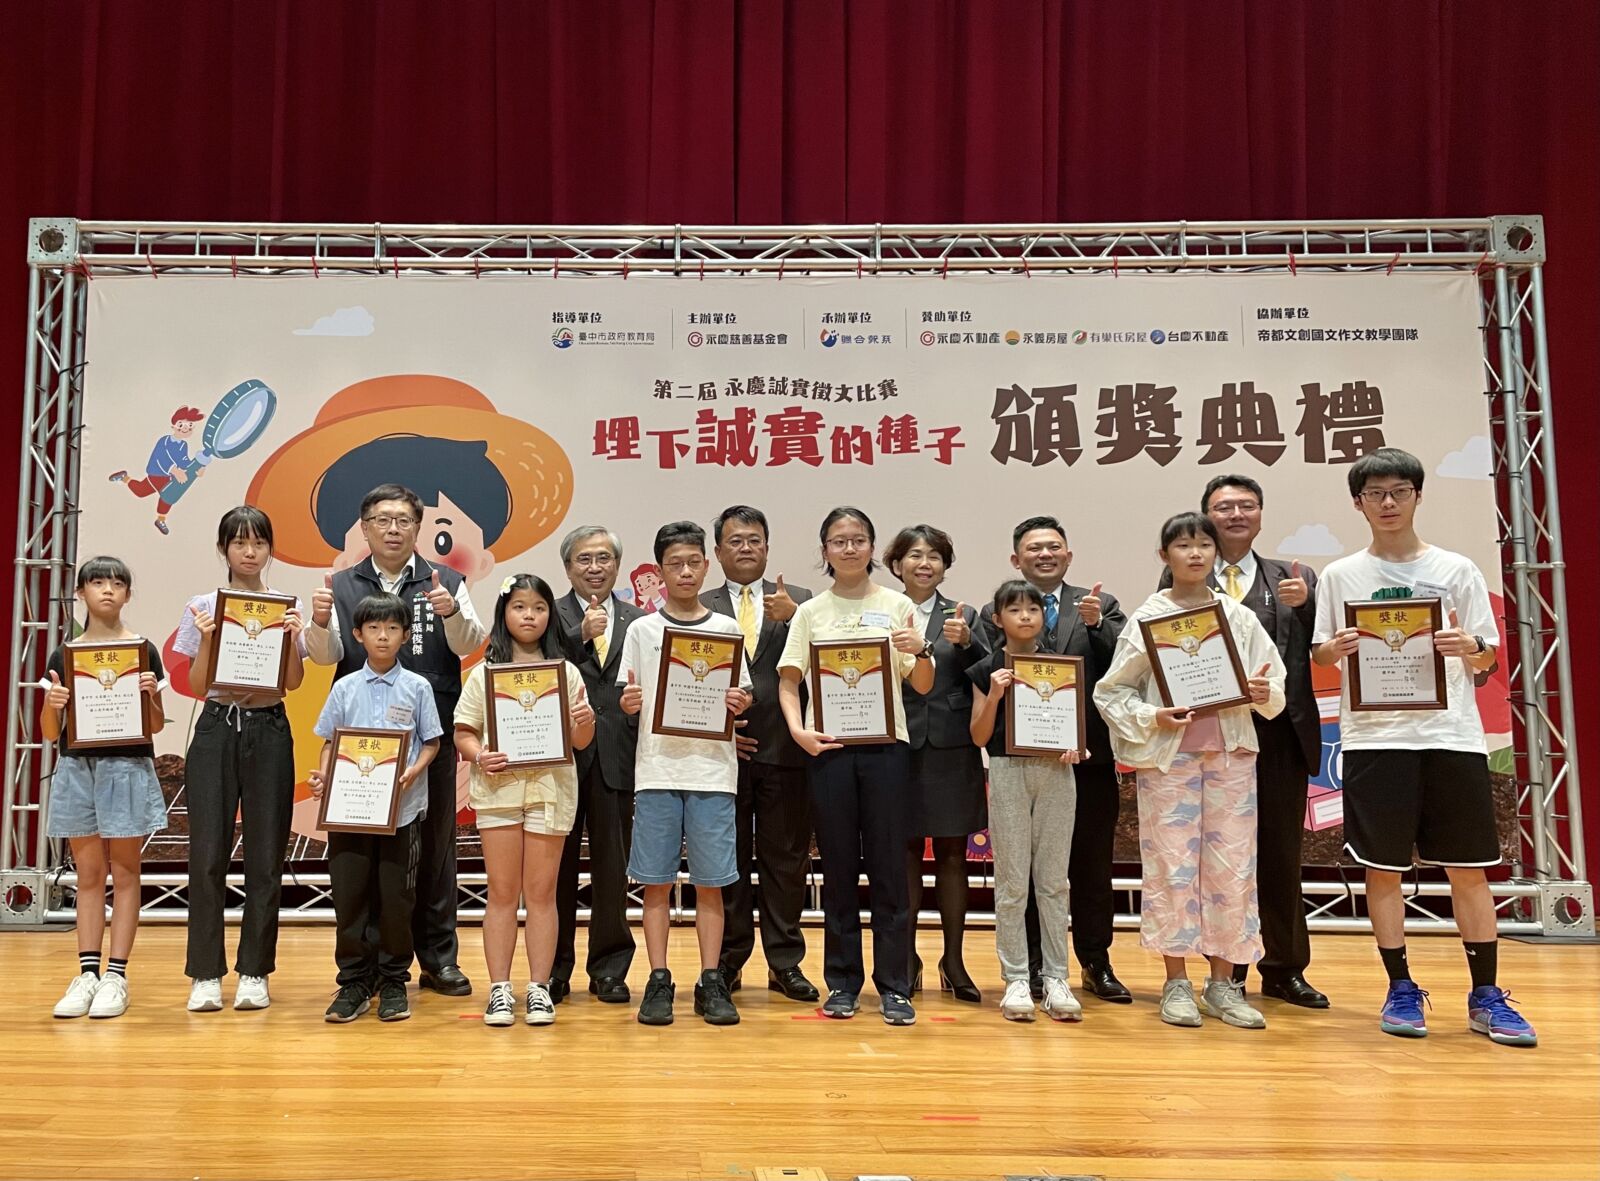 永慶徵文比賽扎根誠實教育　中台灣區賽獲216校參與、1082名學生投稿